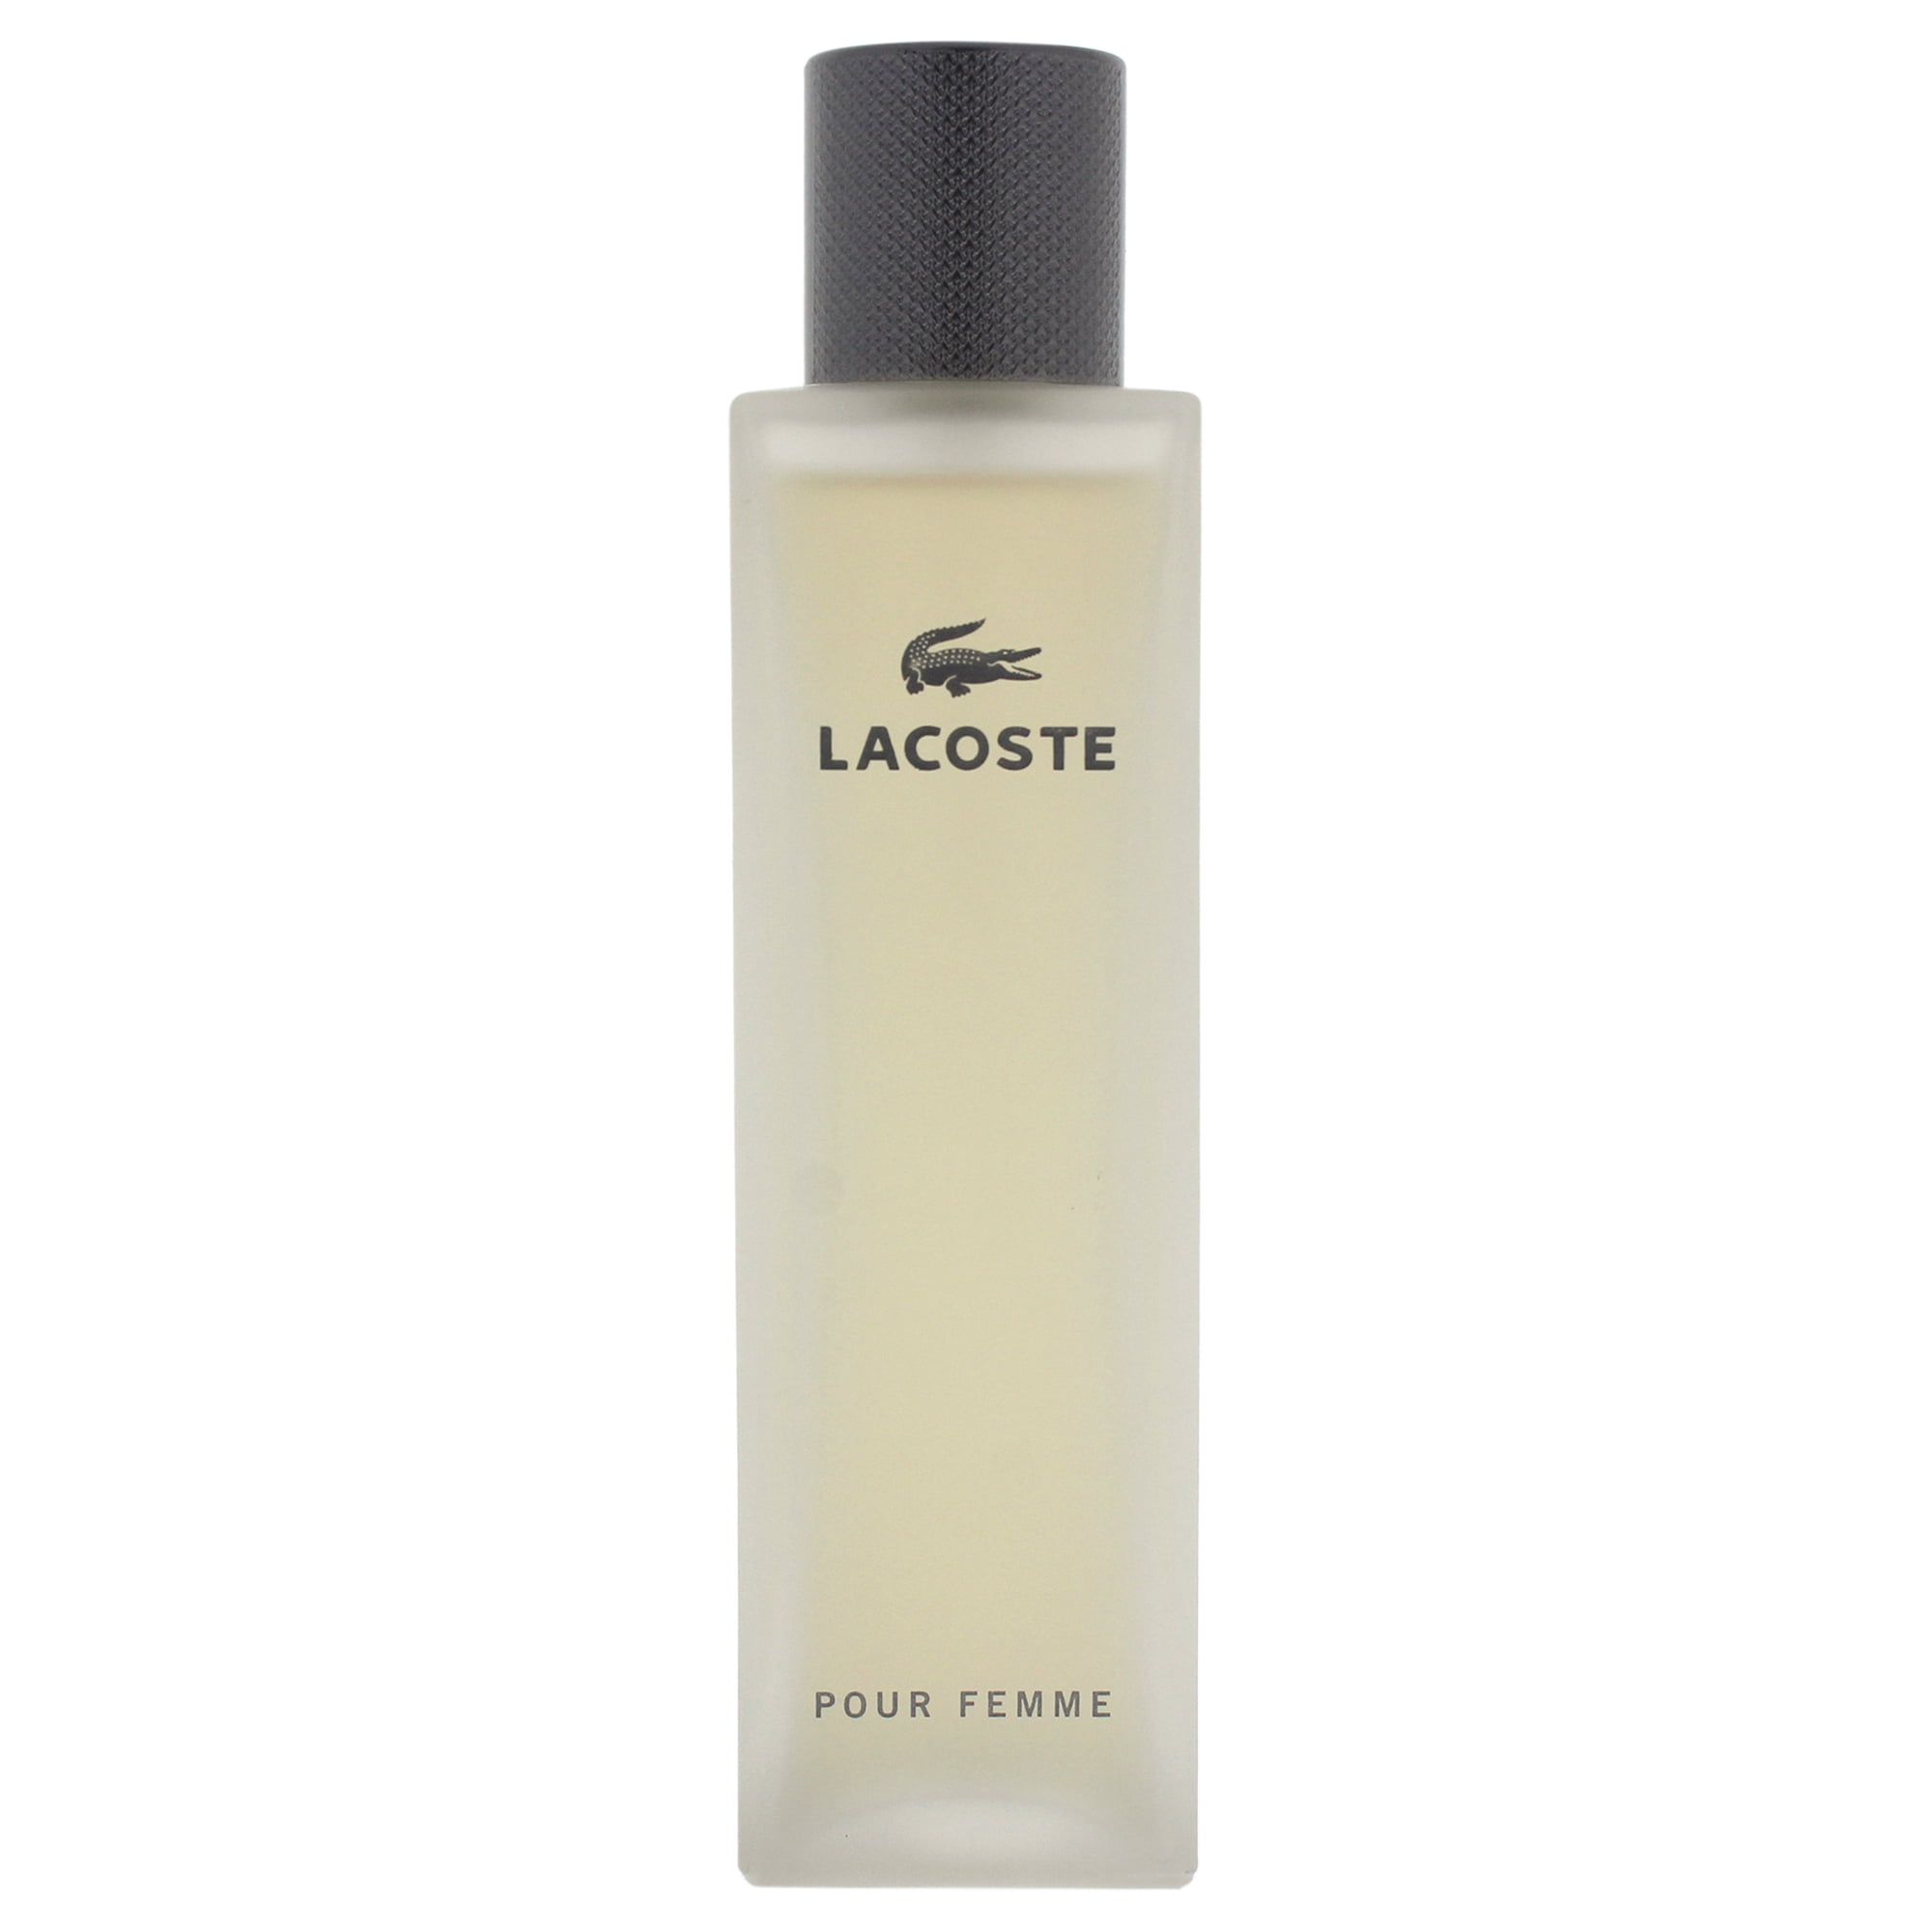 Lacoste Lacoste Pour Femme Eau De Parfum Legere Spray oz - Walmart.com